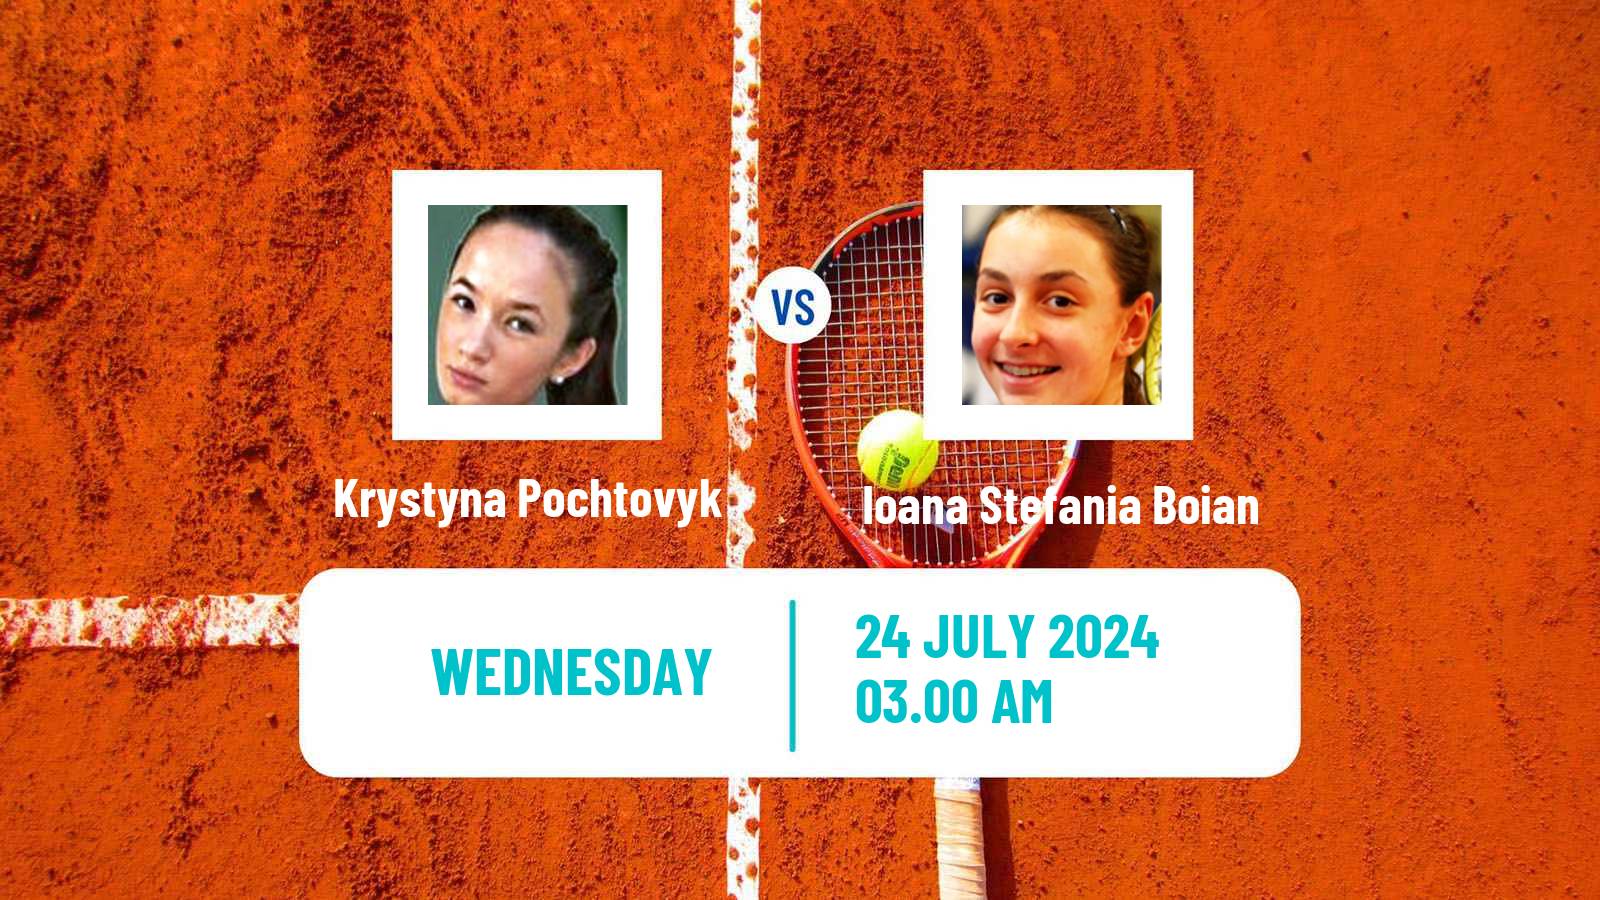 Tennis ITF W15 Satu Mare Women Krystyna Pochtovyk - Ioana Stefania Boian